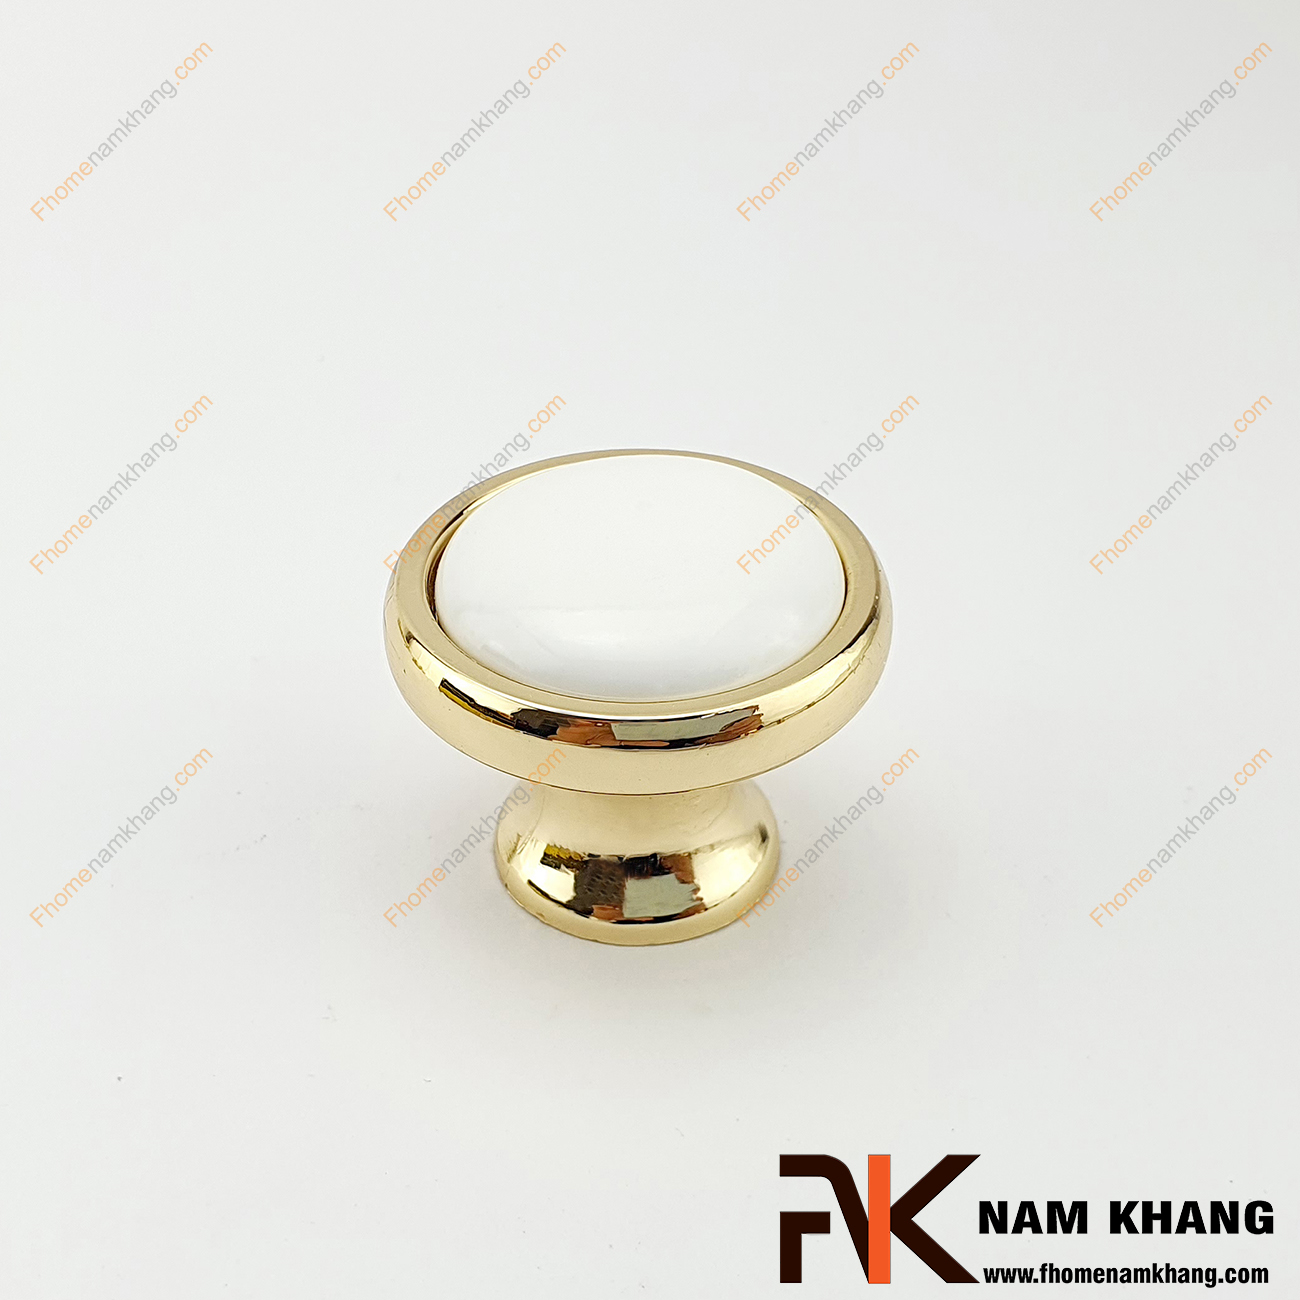 Núm cửa tủ tròn bằng sứ trắng viền vàng NK020L-TV có thiết kế khá đơn giản từ hợp kim mạ vàng bọc quanh sứ trắng bóng cao cấp. Khá đơn giản nhưng lại toát lên vẻ ngoài tinh tế và rất sang trọng .